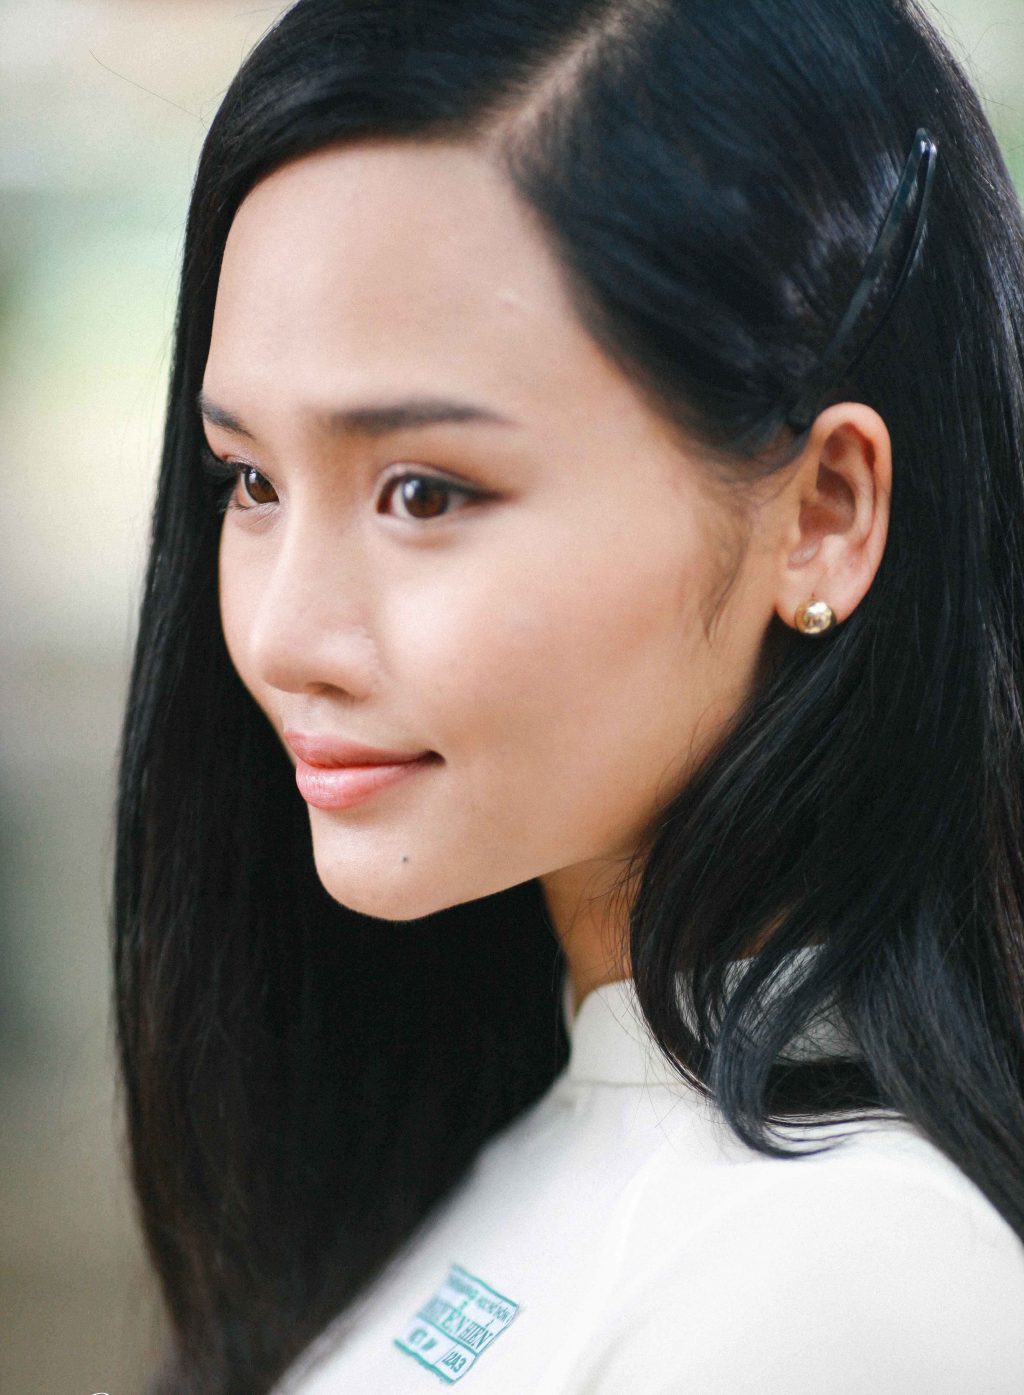 Nữ diễn viên Miu Lê trong tạo hình nhân vật nữ sinh của những năm 90 gây nhiều tranh cãi.